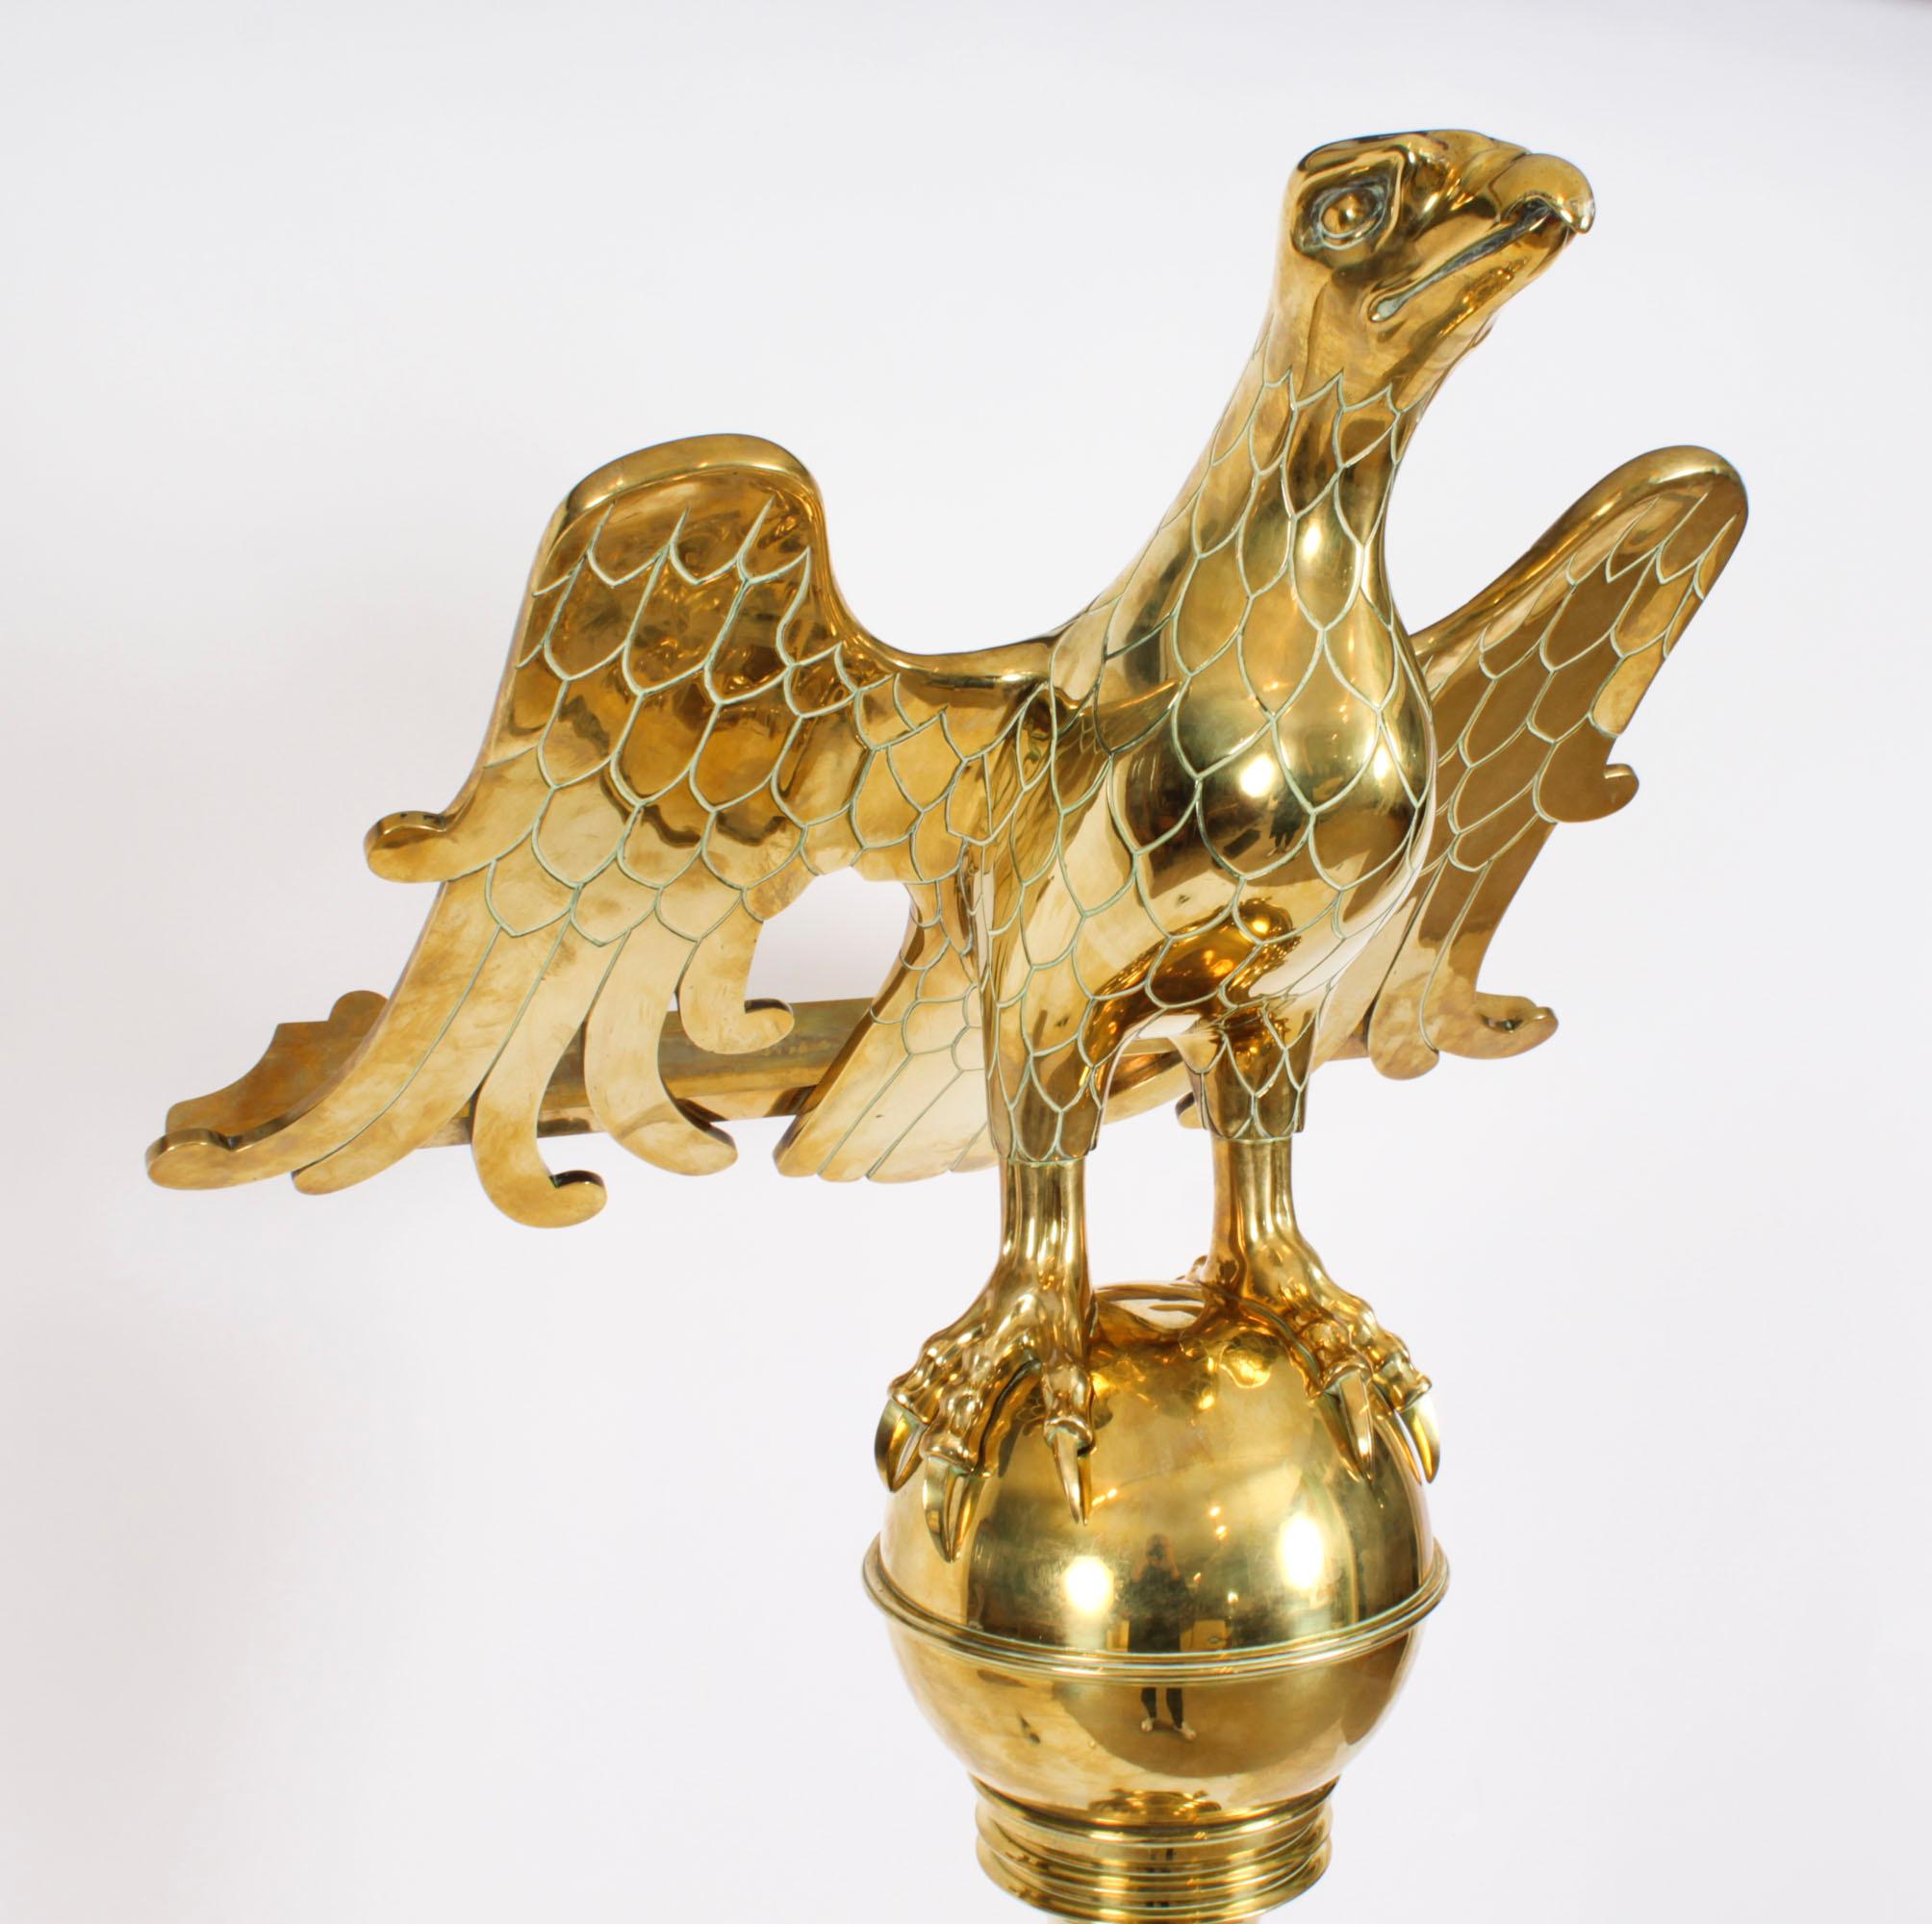 Dies ist eine beeindruckende antike Messing viktorianischen  Adlerpult, datiert um 1890.

Das 164 cm (5ft6inch) hohe Rednerpult zeigt einen Adler mit ausgebreiteten Flügeln und detaillierten Federn, die die Buchablage bilden,  auf einer Kugel, die